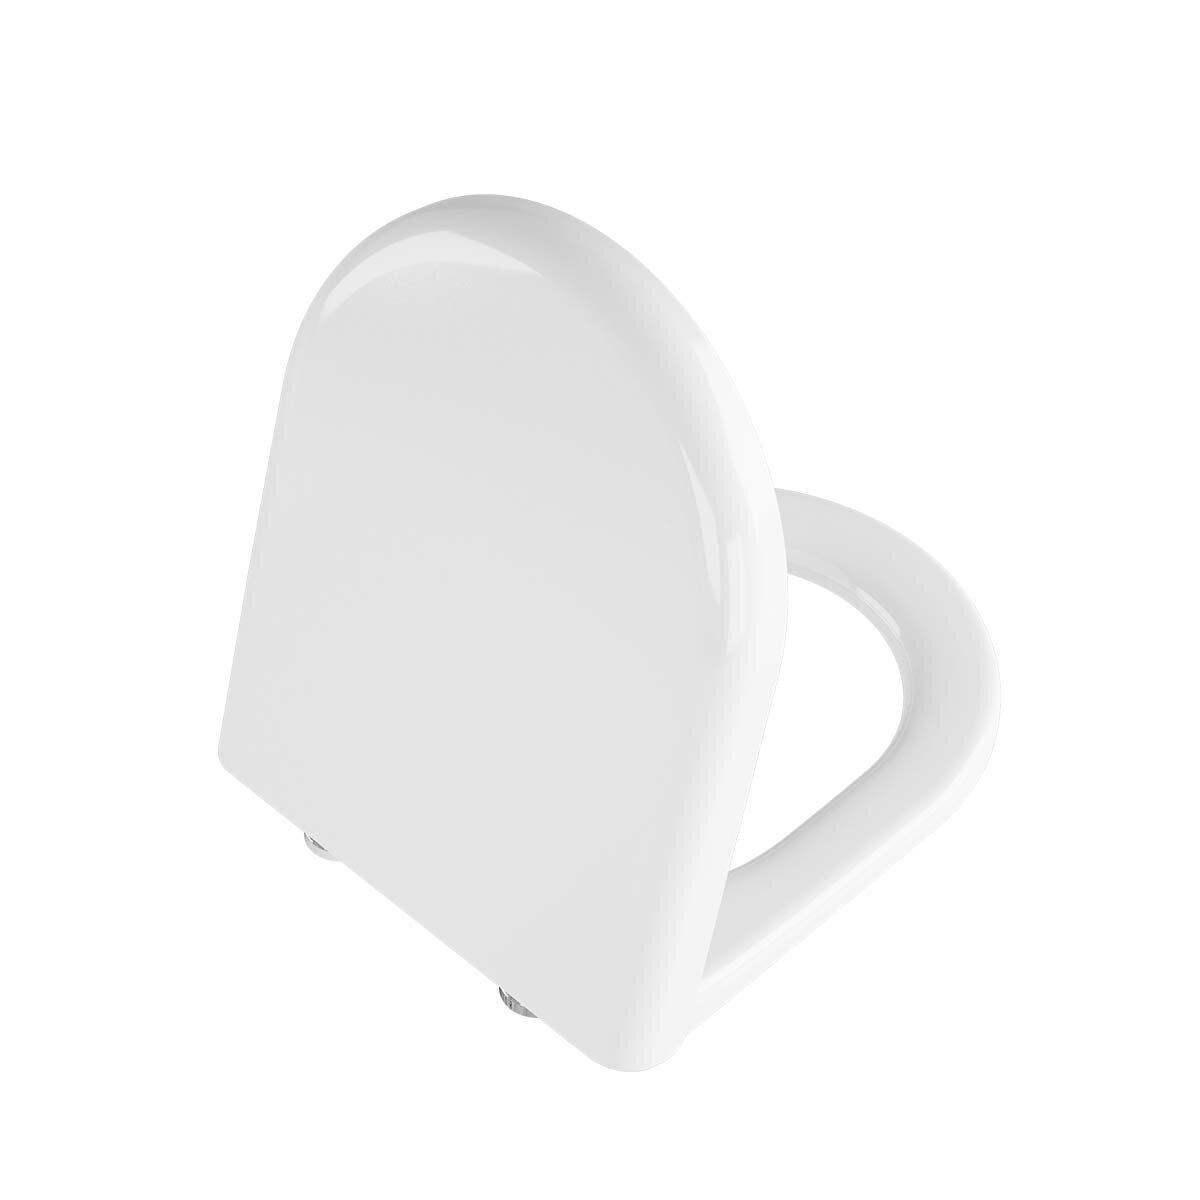 Sedile copri WC Zentrum per vaso in duroplast con cerniere in metallo bianco Vitra 127-003-001